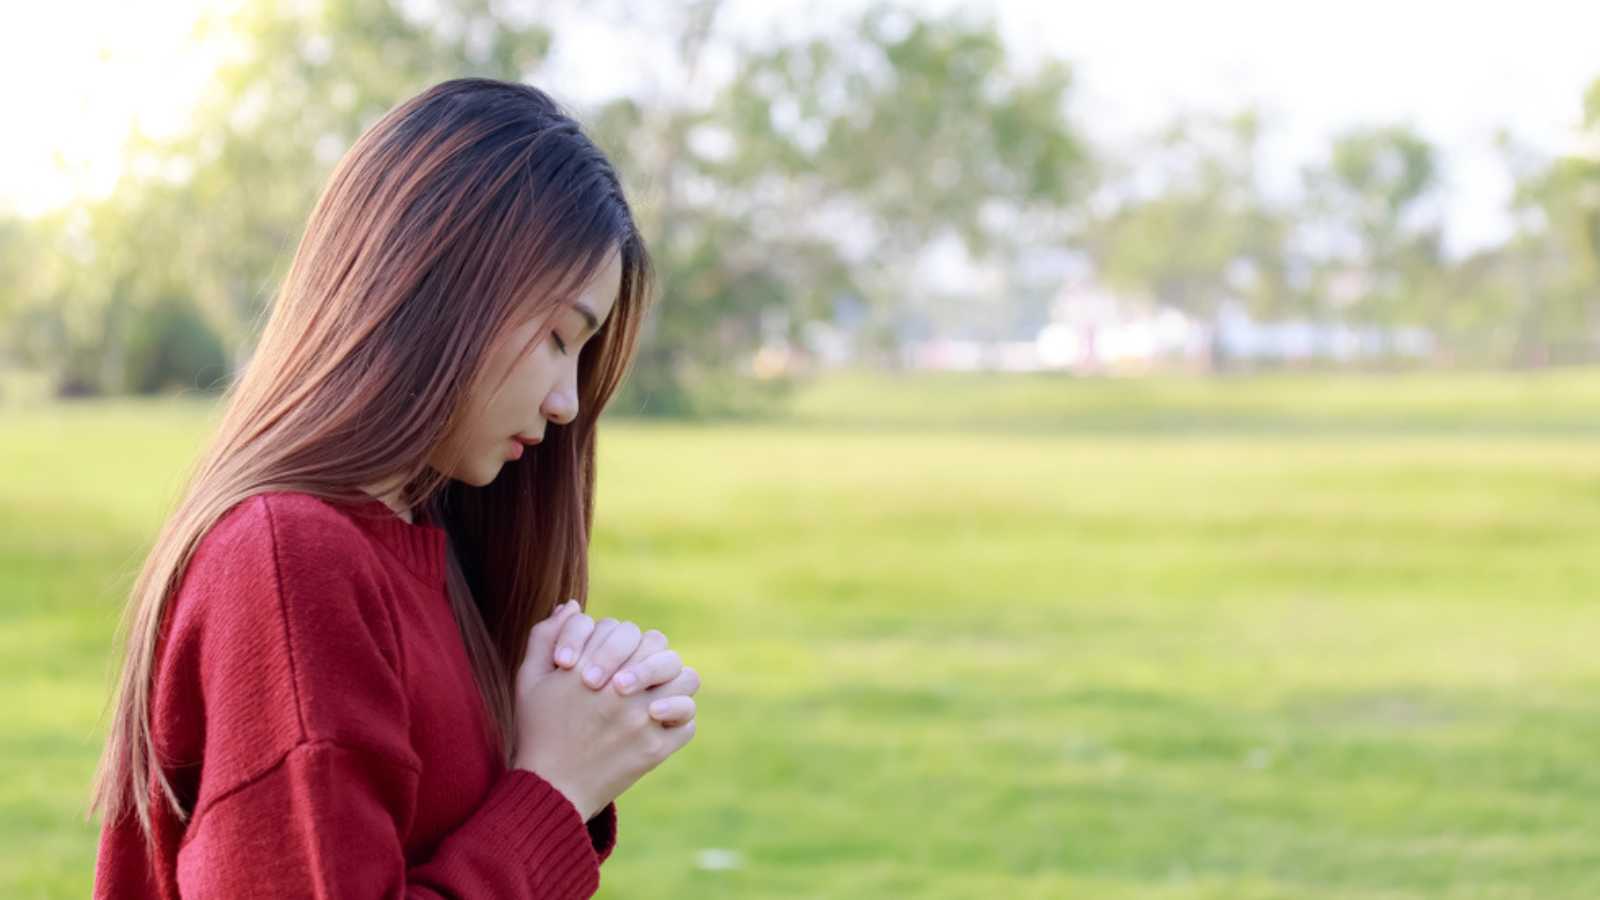 Woman praying in morning and walking